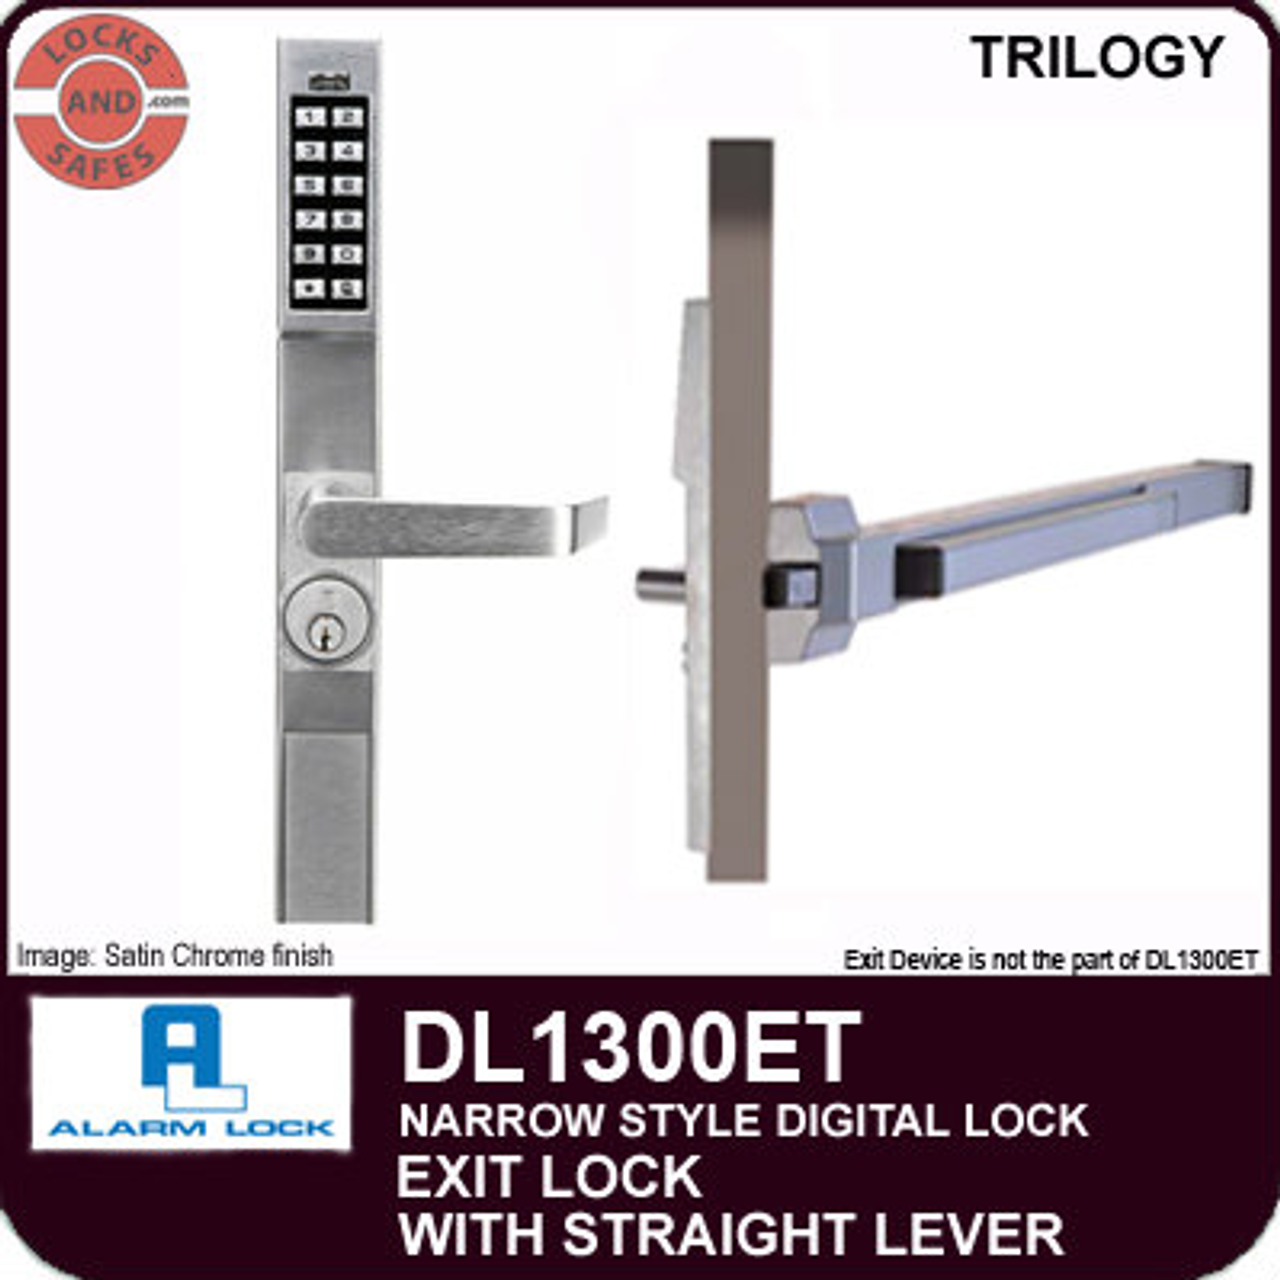 Alarm Lock Trilogy DL1300ET NARROW STYLE EXIT LOCK